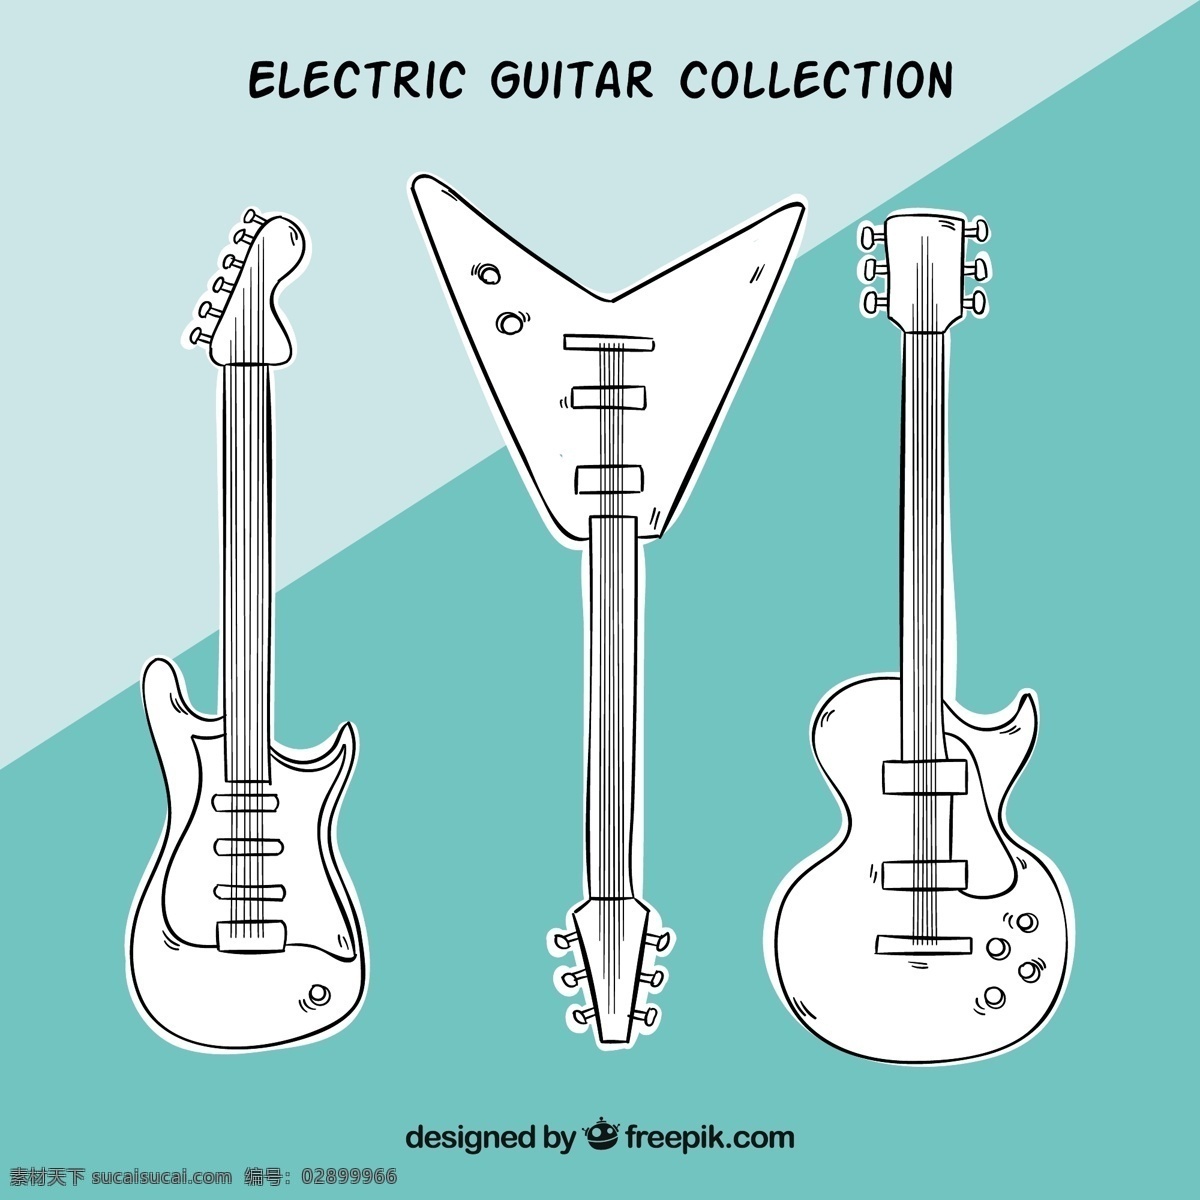 一包 手绘 电吉他 音乐方面 吉他 摇滚 绘画 声音 音乐 游戏 电器 乐器 画 歌 包装 小品 摇滚音乐 仪器 设备